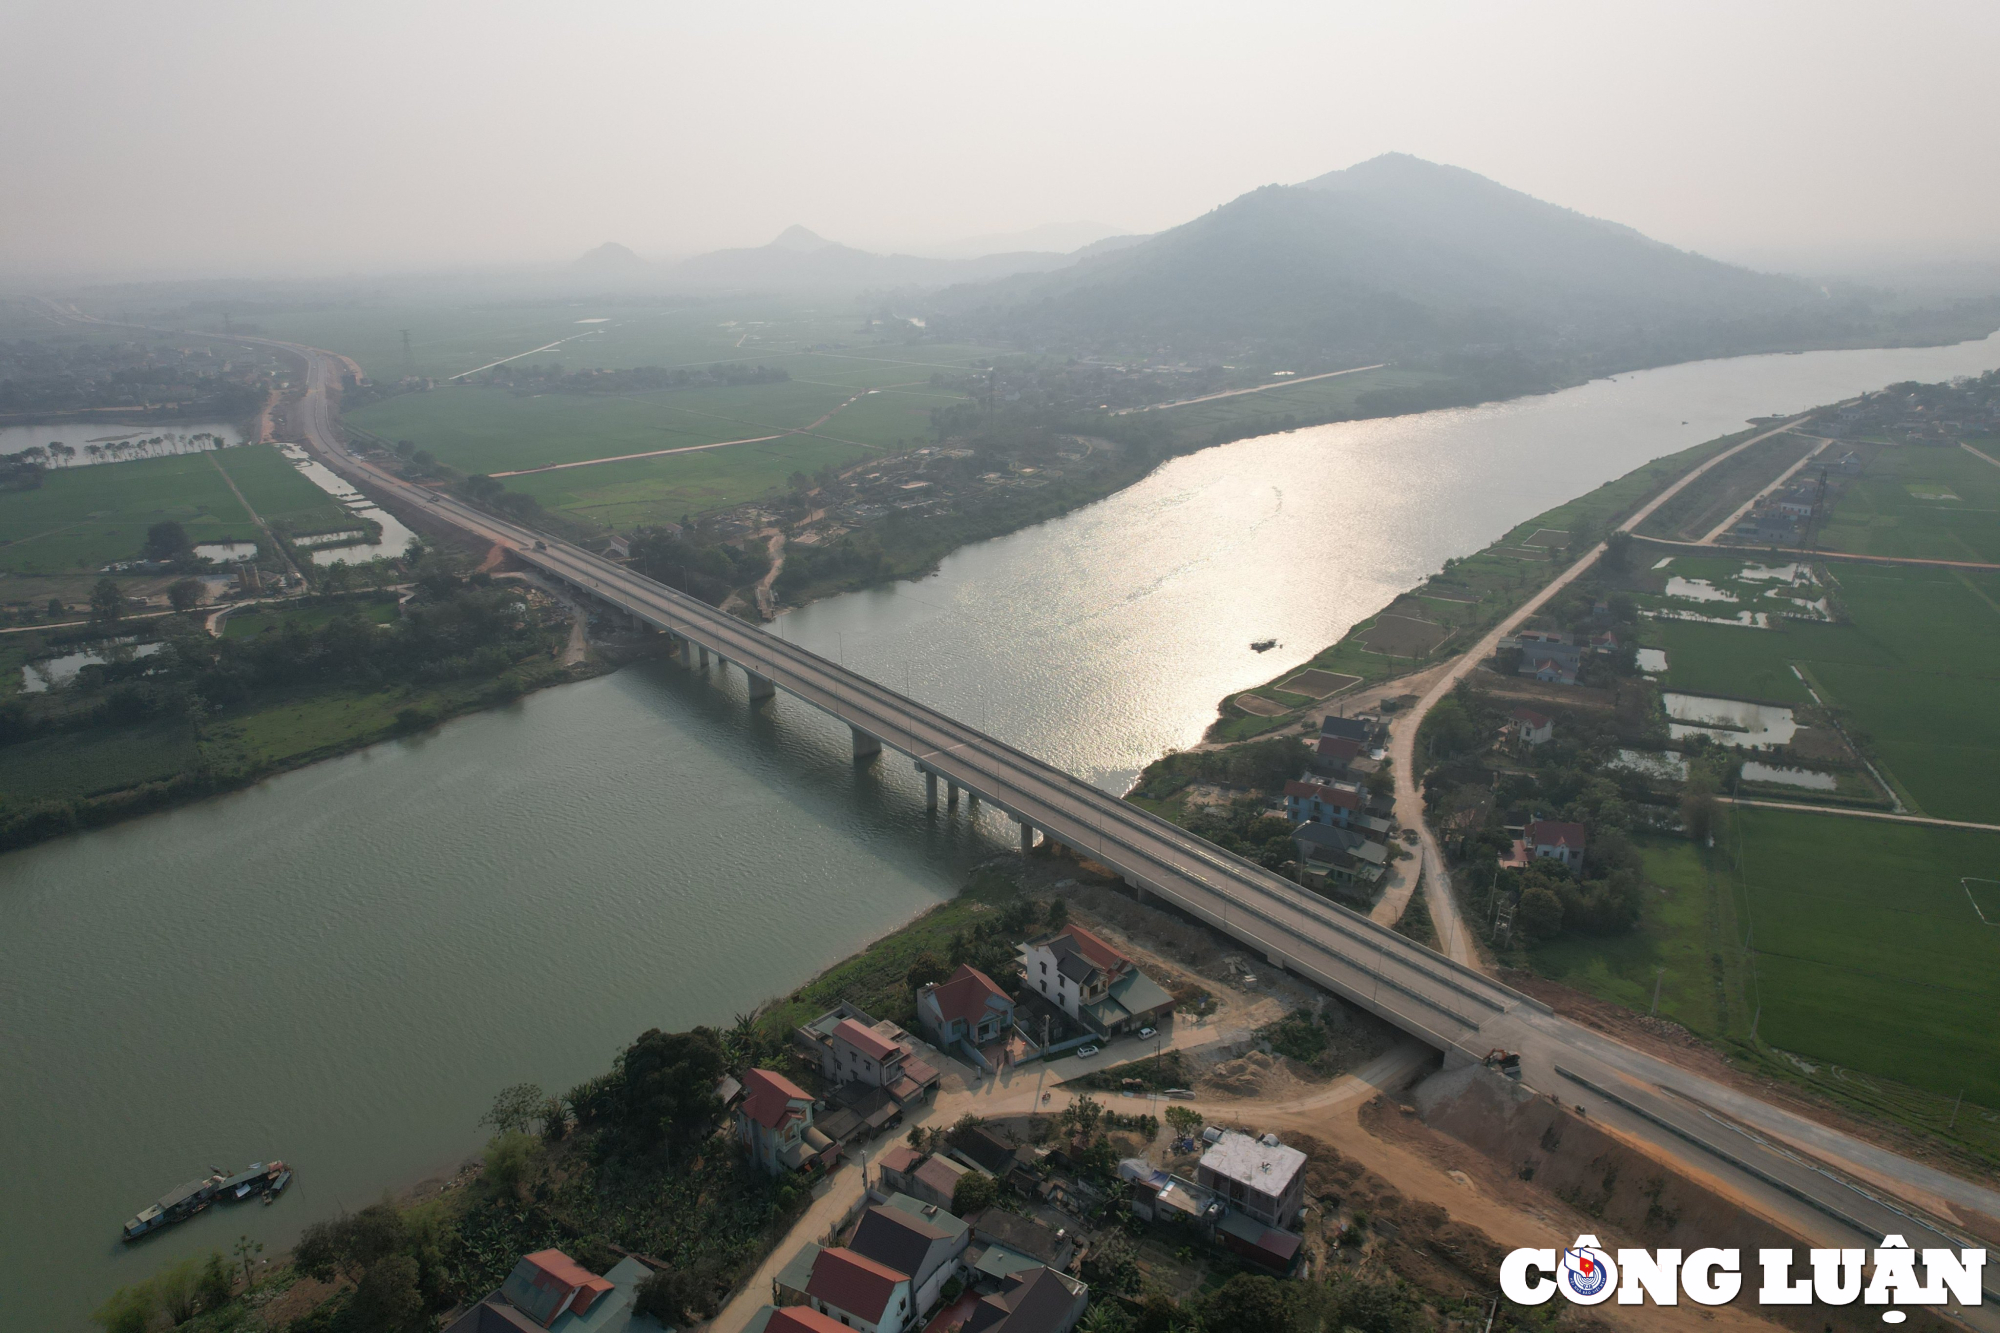 Cao tốc Mai Sơn - Quốc lộ 45 có chiều dài 63,37km nối 2 tỉnh Ninh Bình và Thanh Hóa do Ban quản lý dự án Thăng Long là đại diện chủ đầu tư.